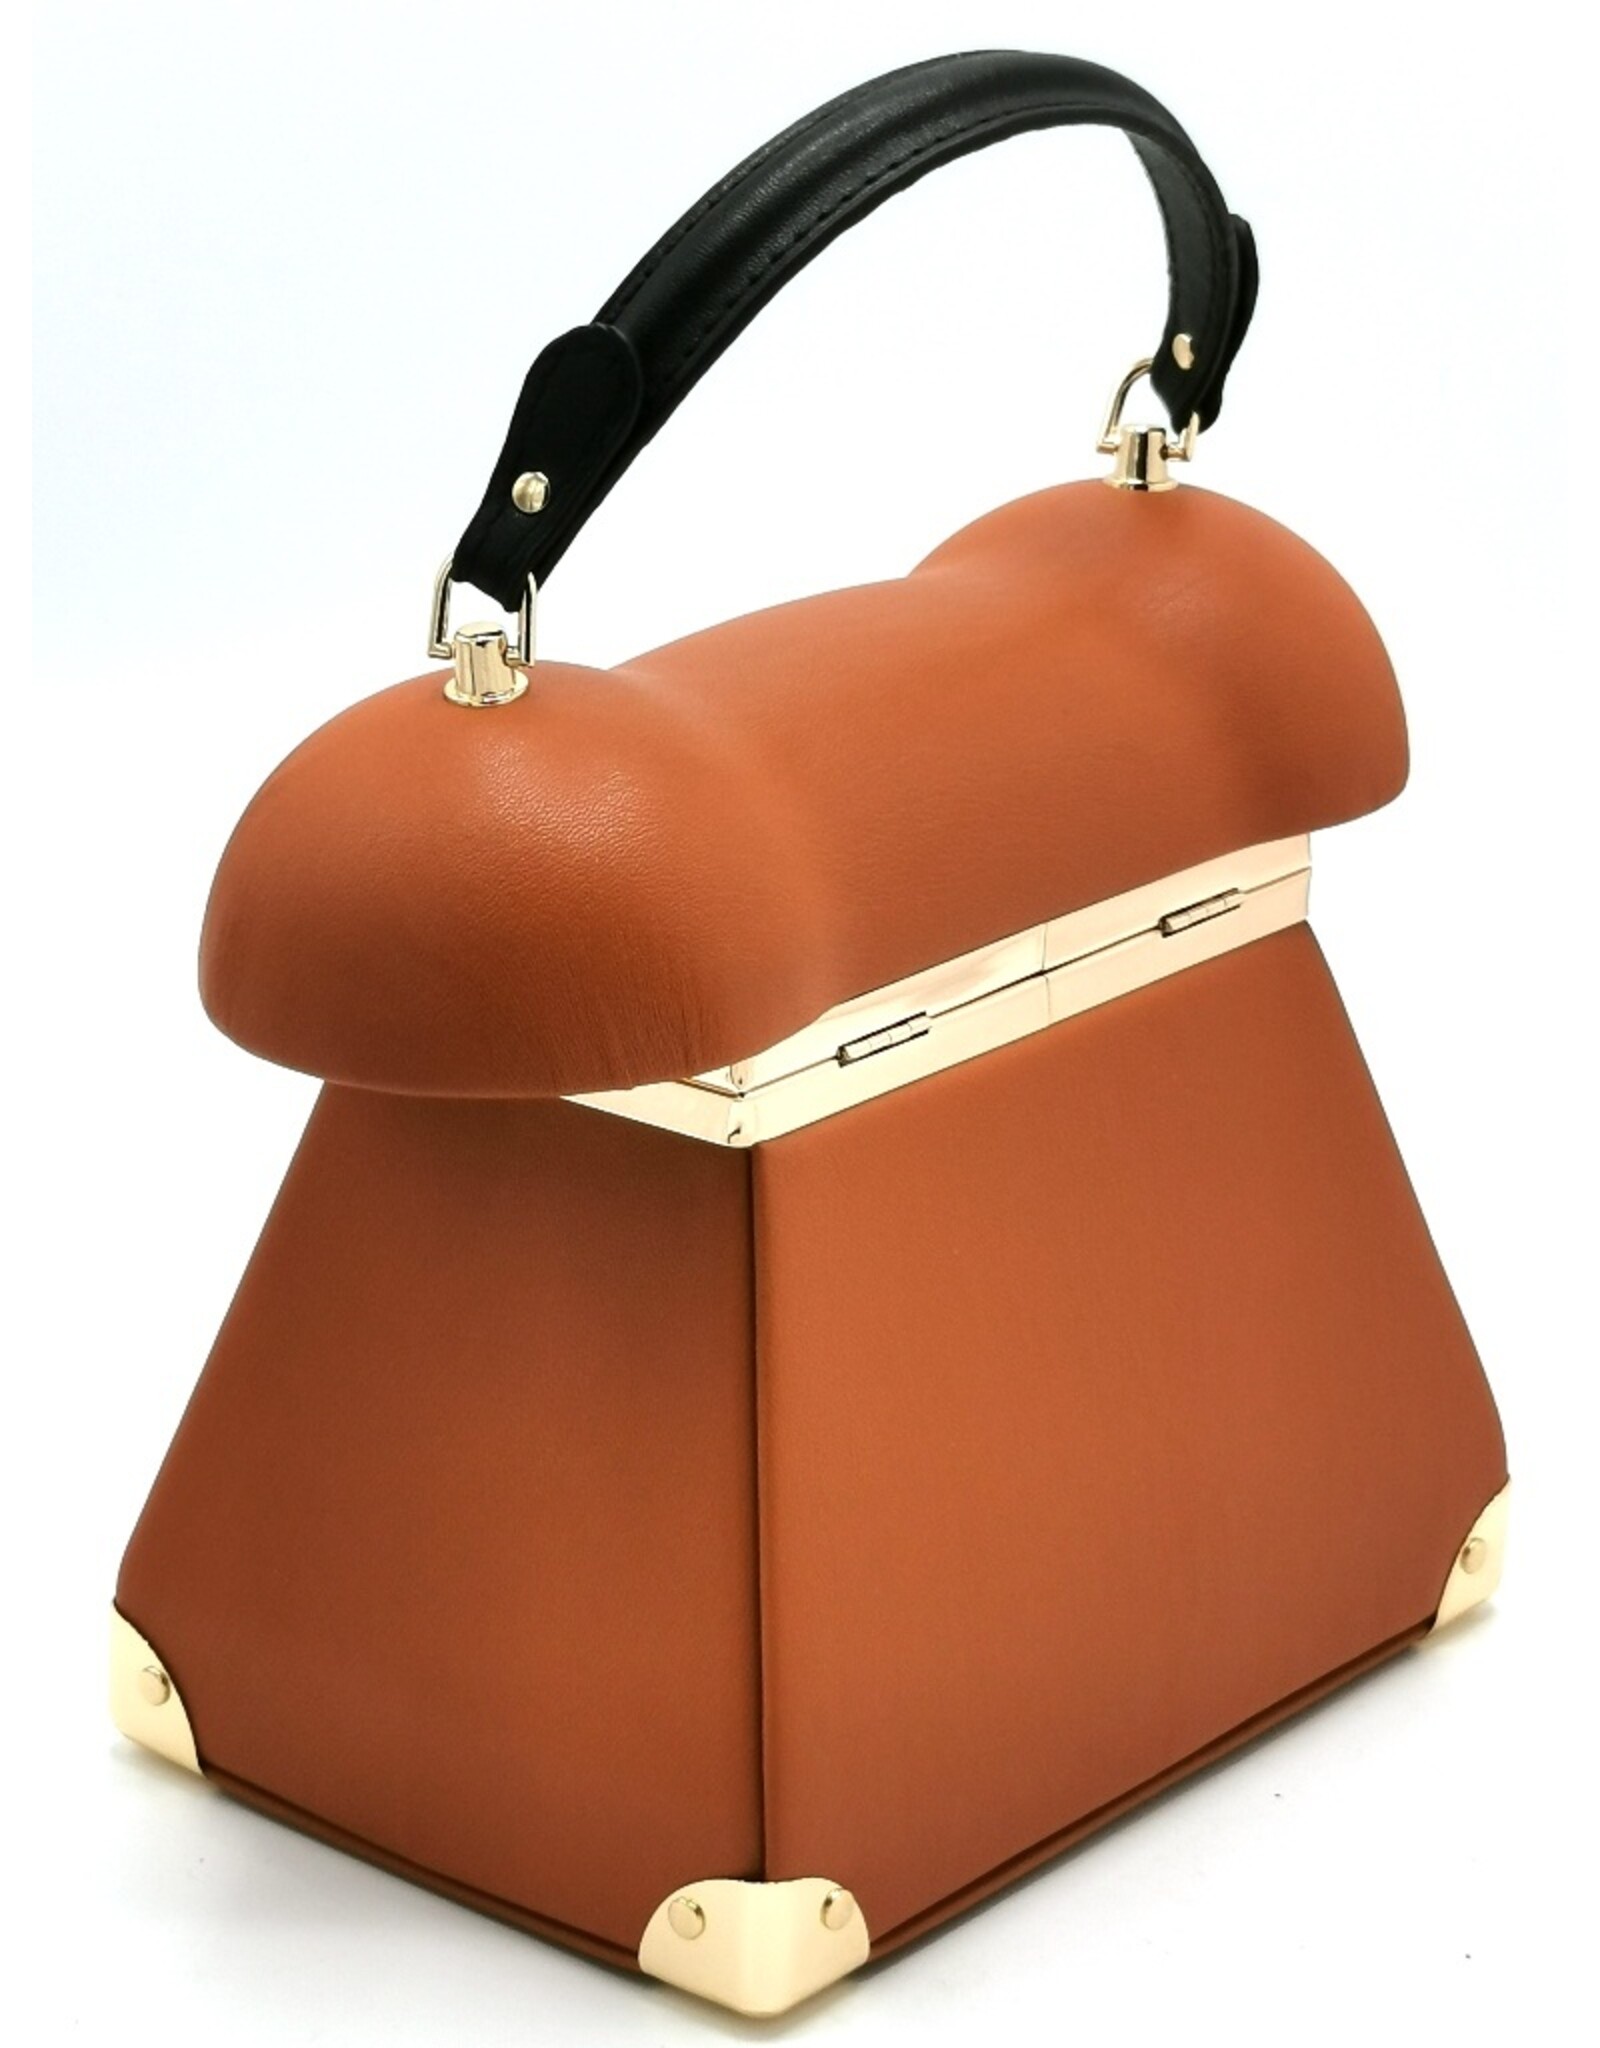 Magic Bags Fantasy bags - Retro Telephone bag brown (cognac)